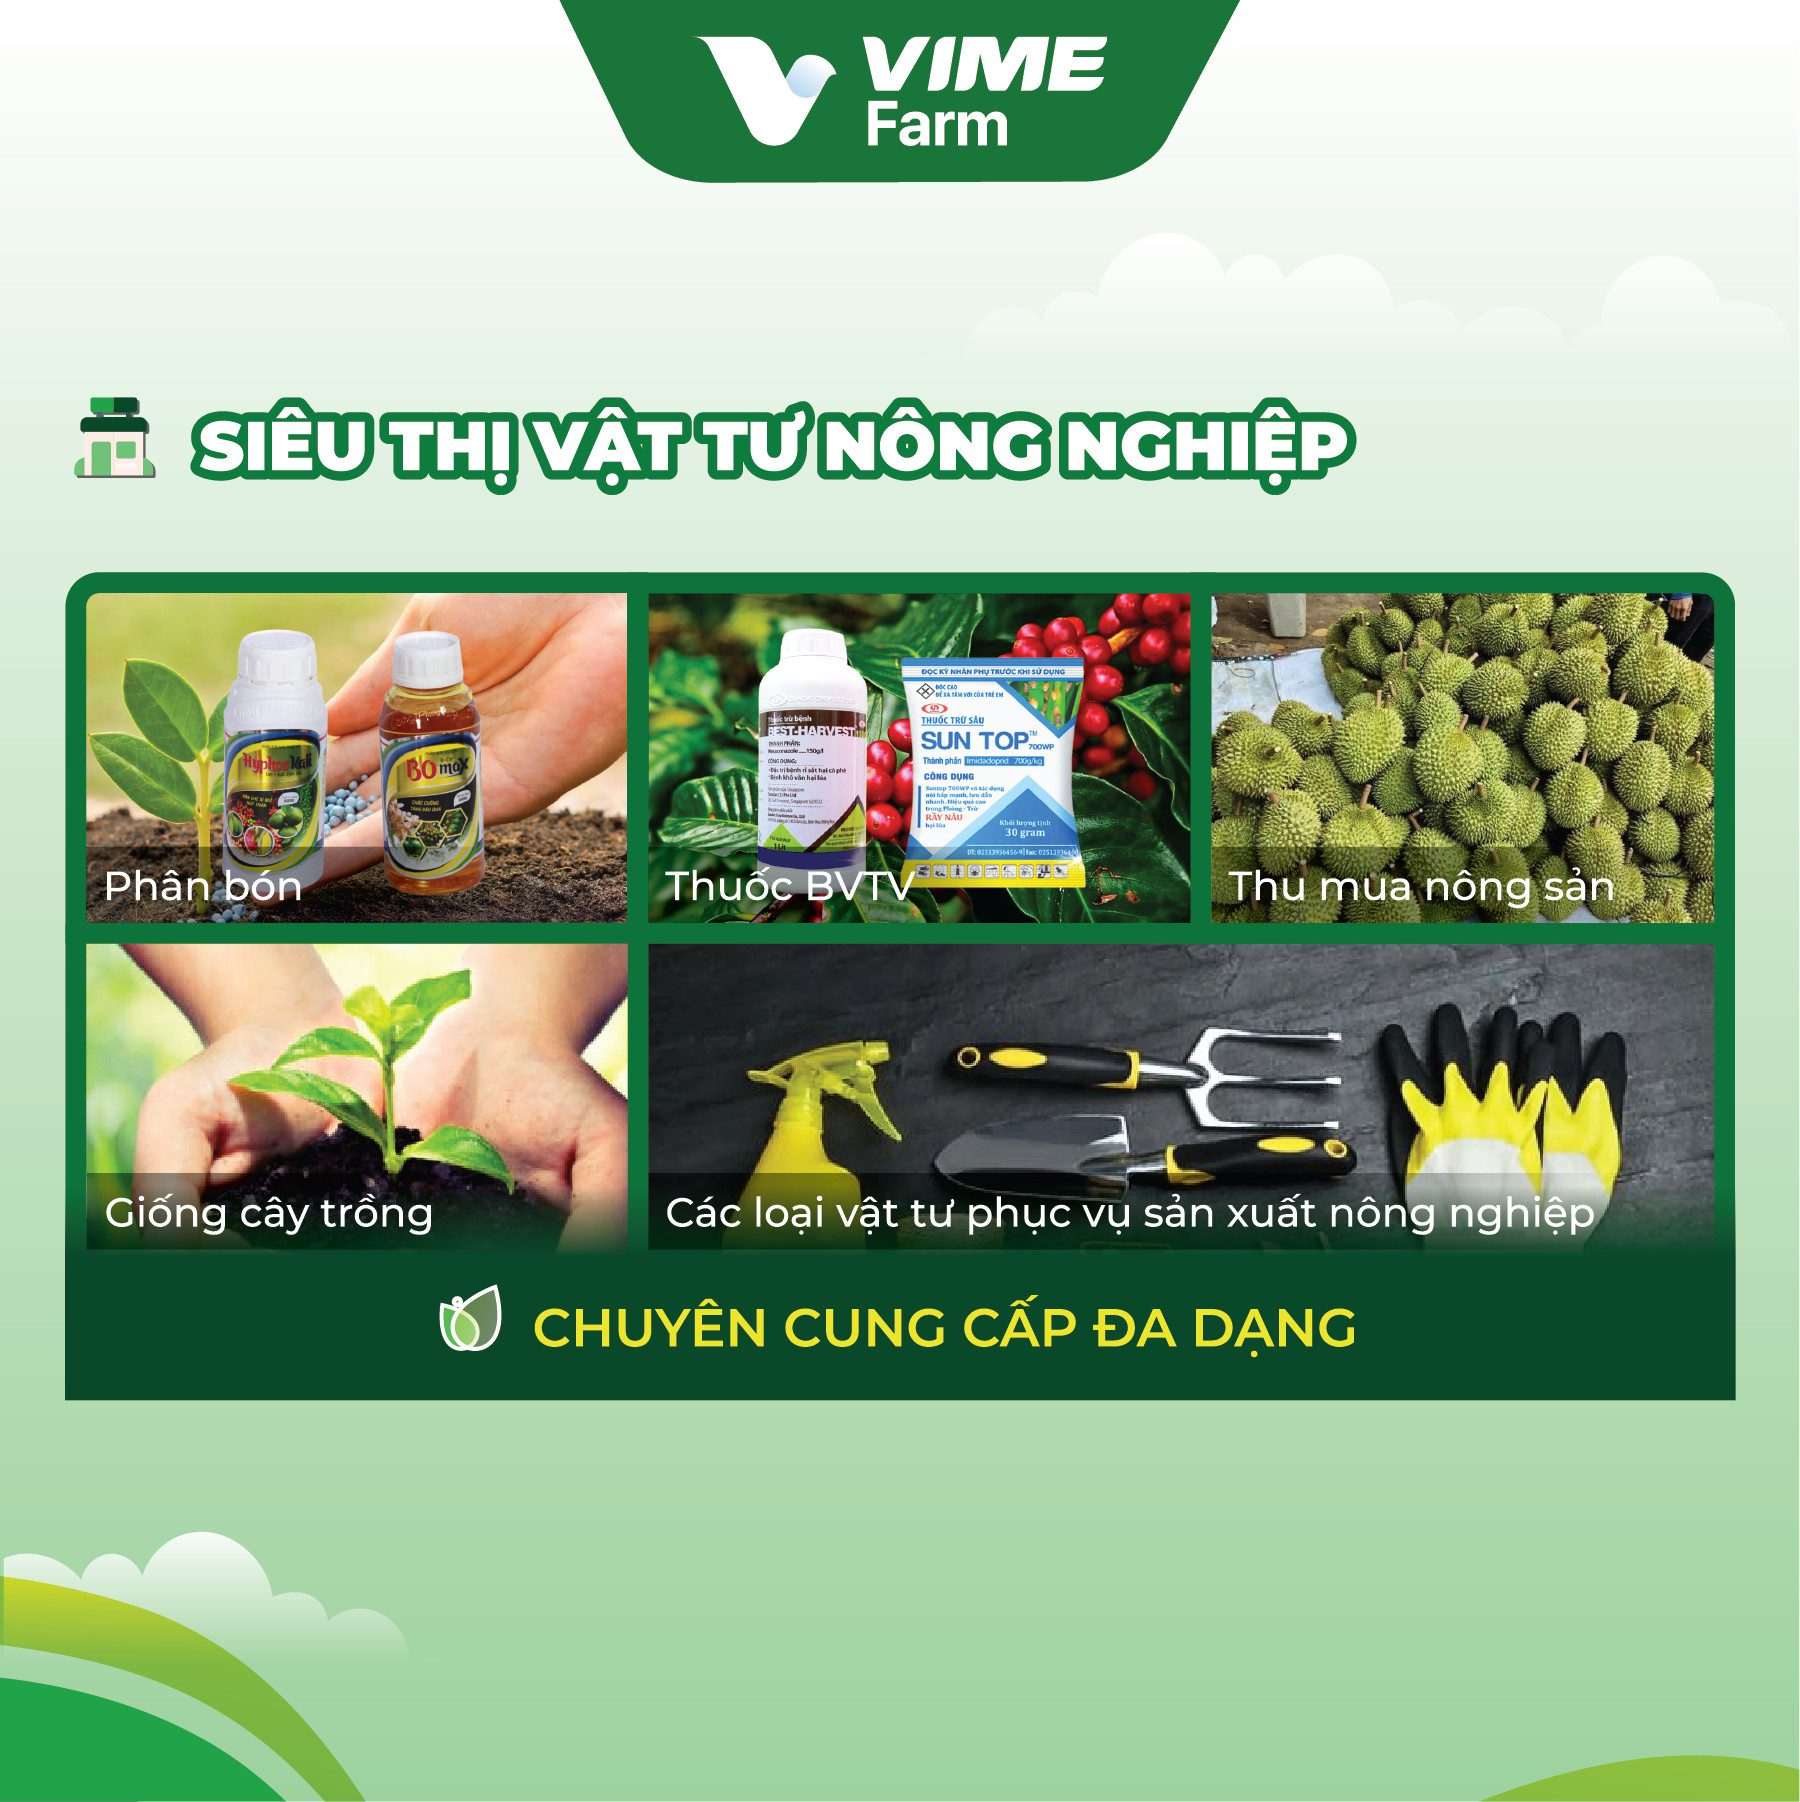 Siêu thị Vật tư Nông nghiệp – VIME Farm Đồng Nai ảnh 1